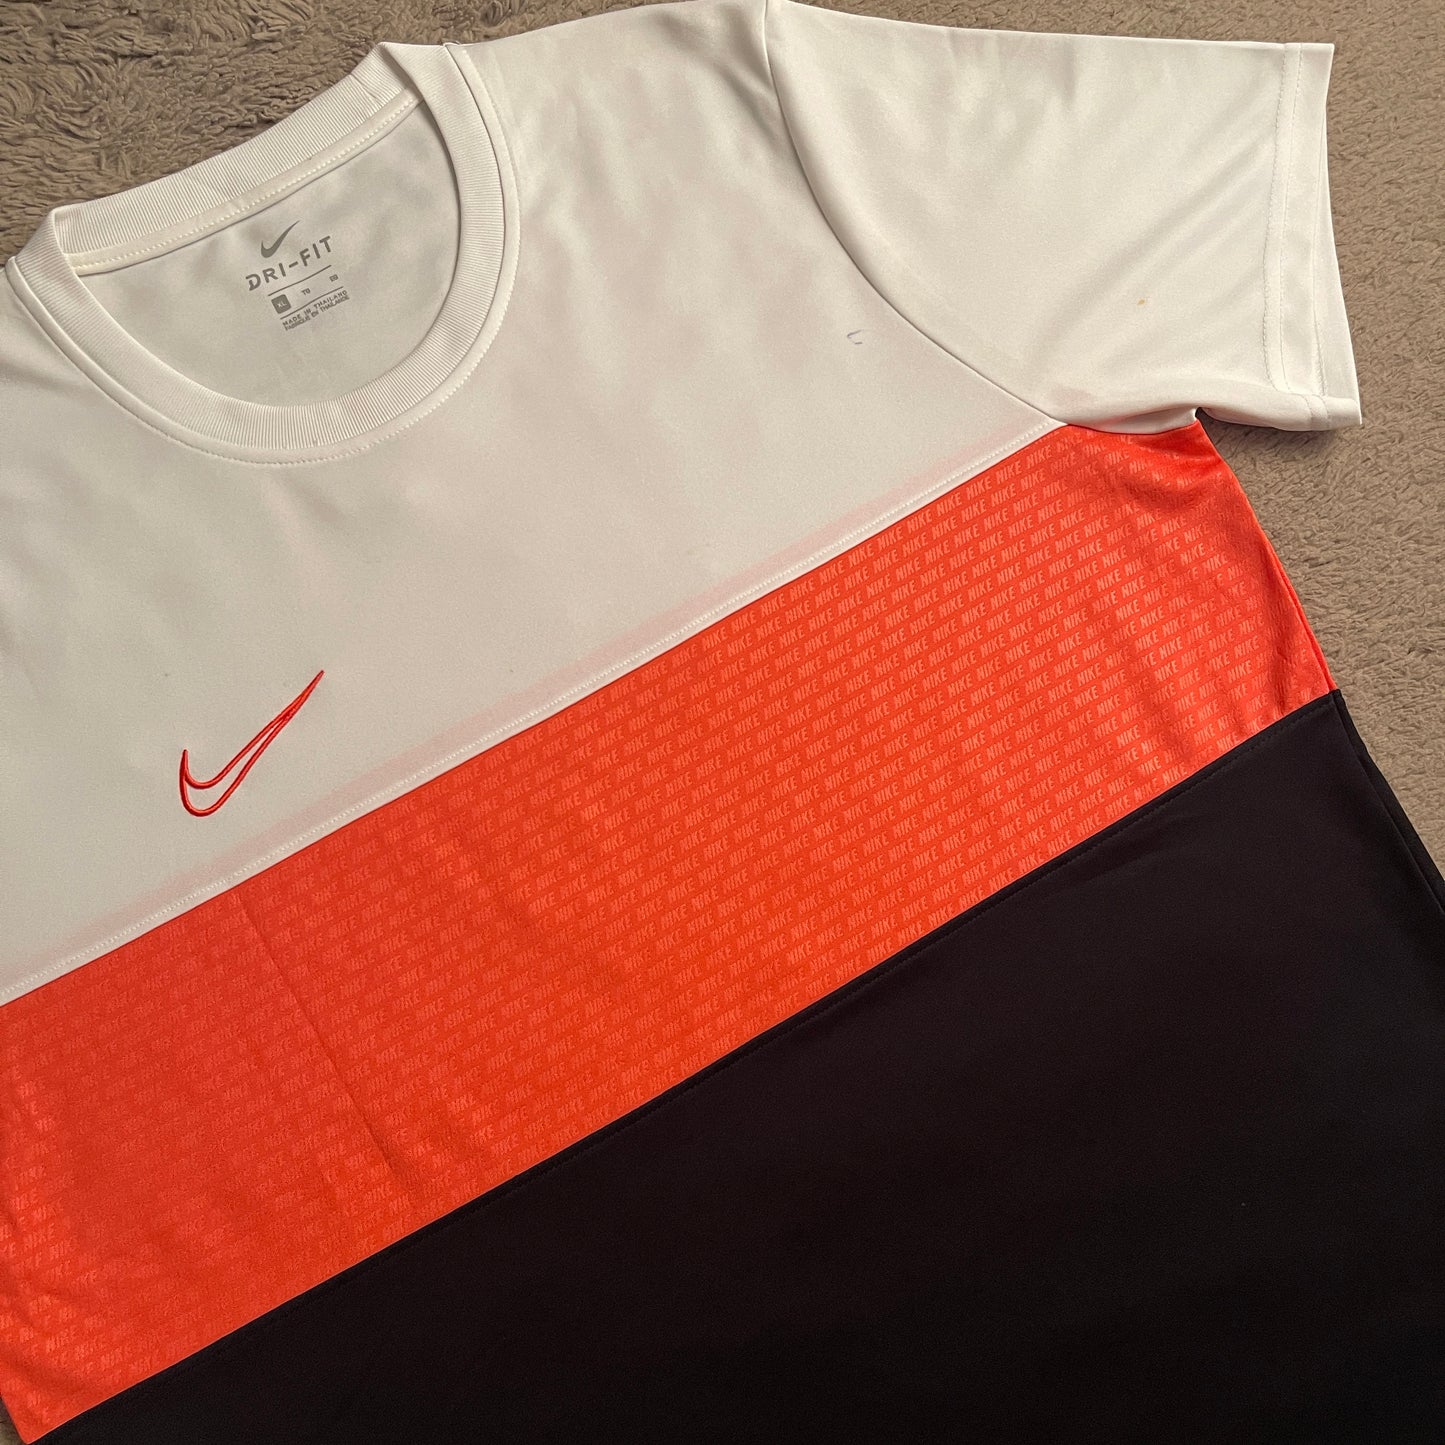 Nike Dri-FIT Tricolor (White/Pink/Black) Shirt (XL)